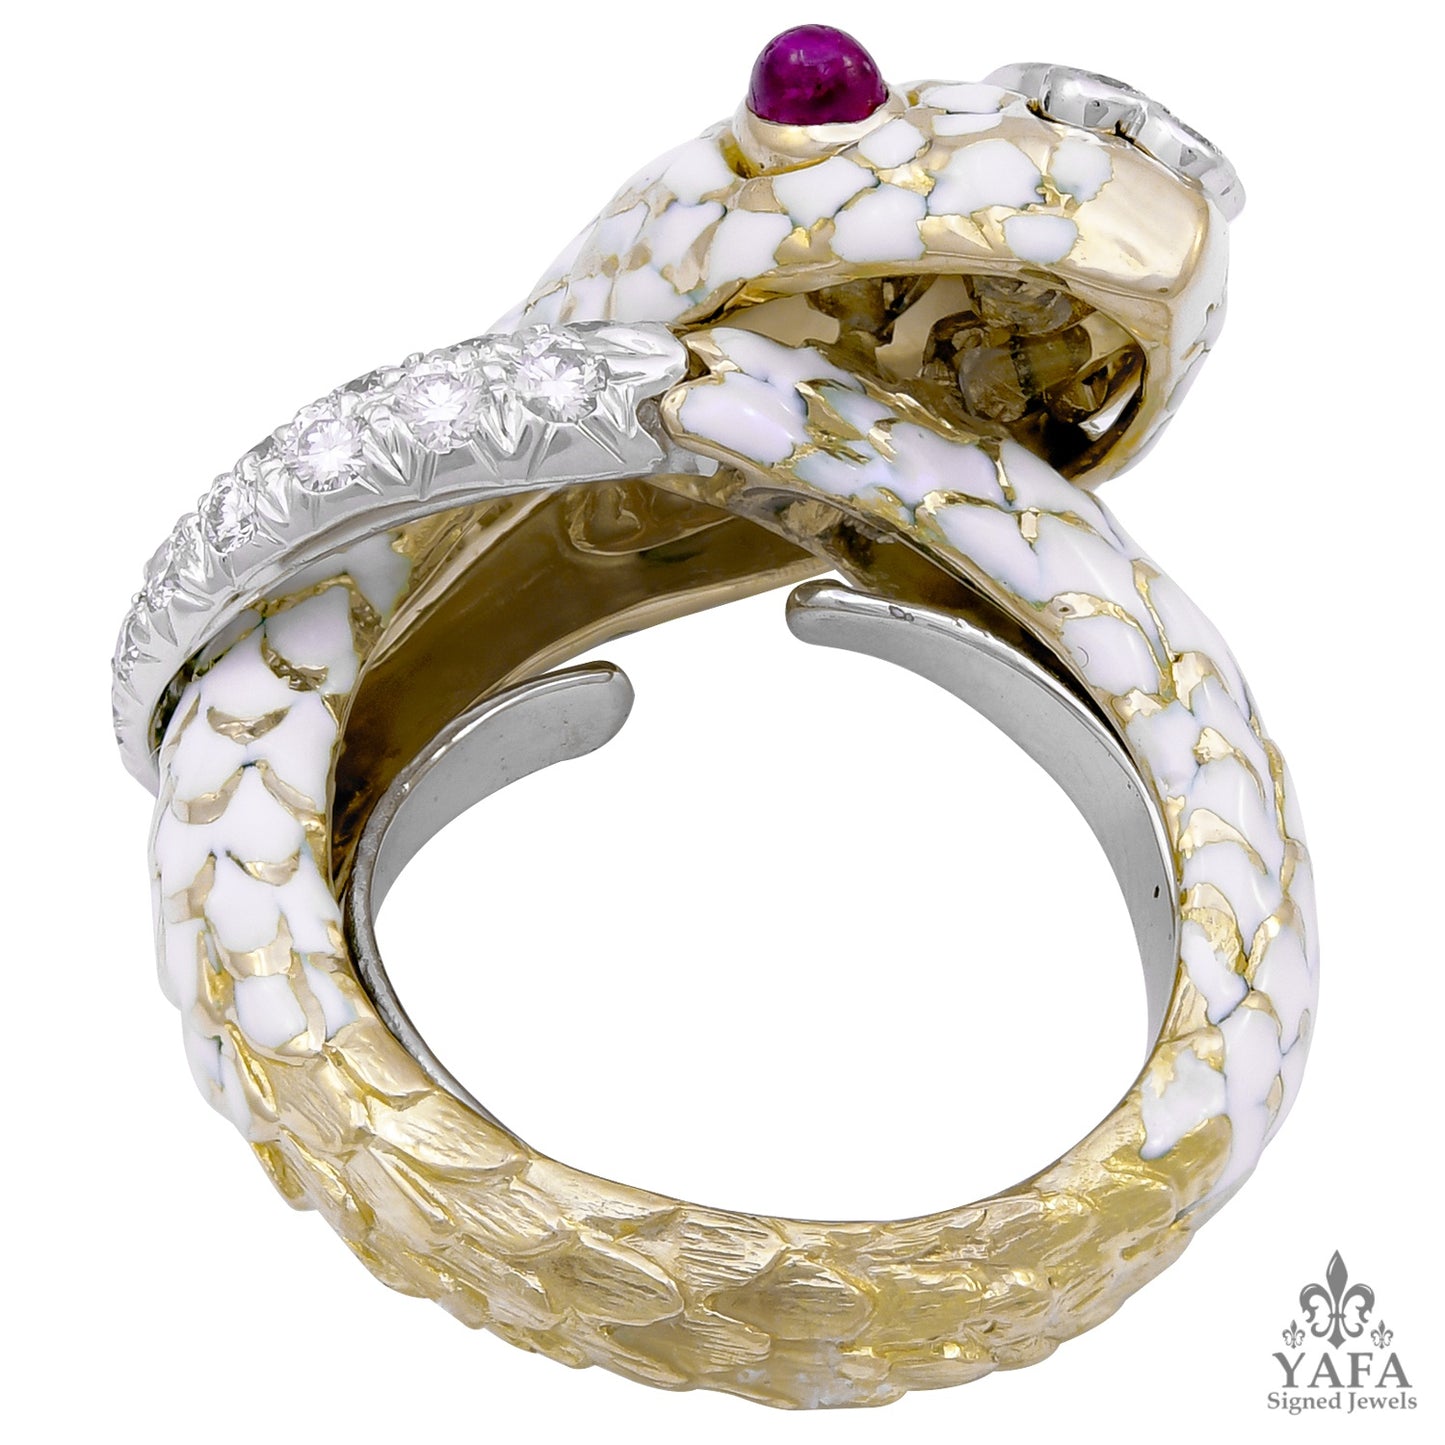 DAVID WEBB Cabochon Ruby, White Enamel Snake Ring